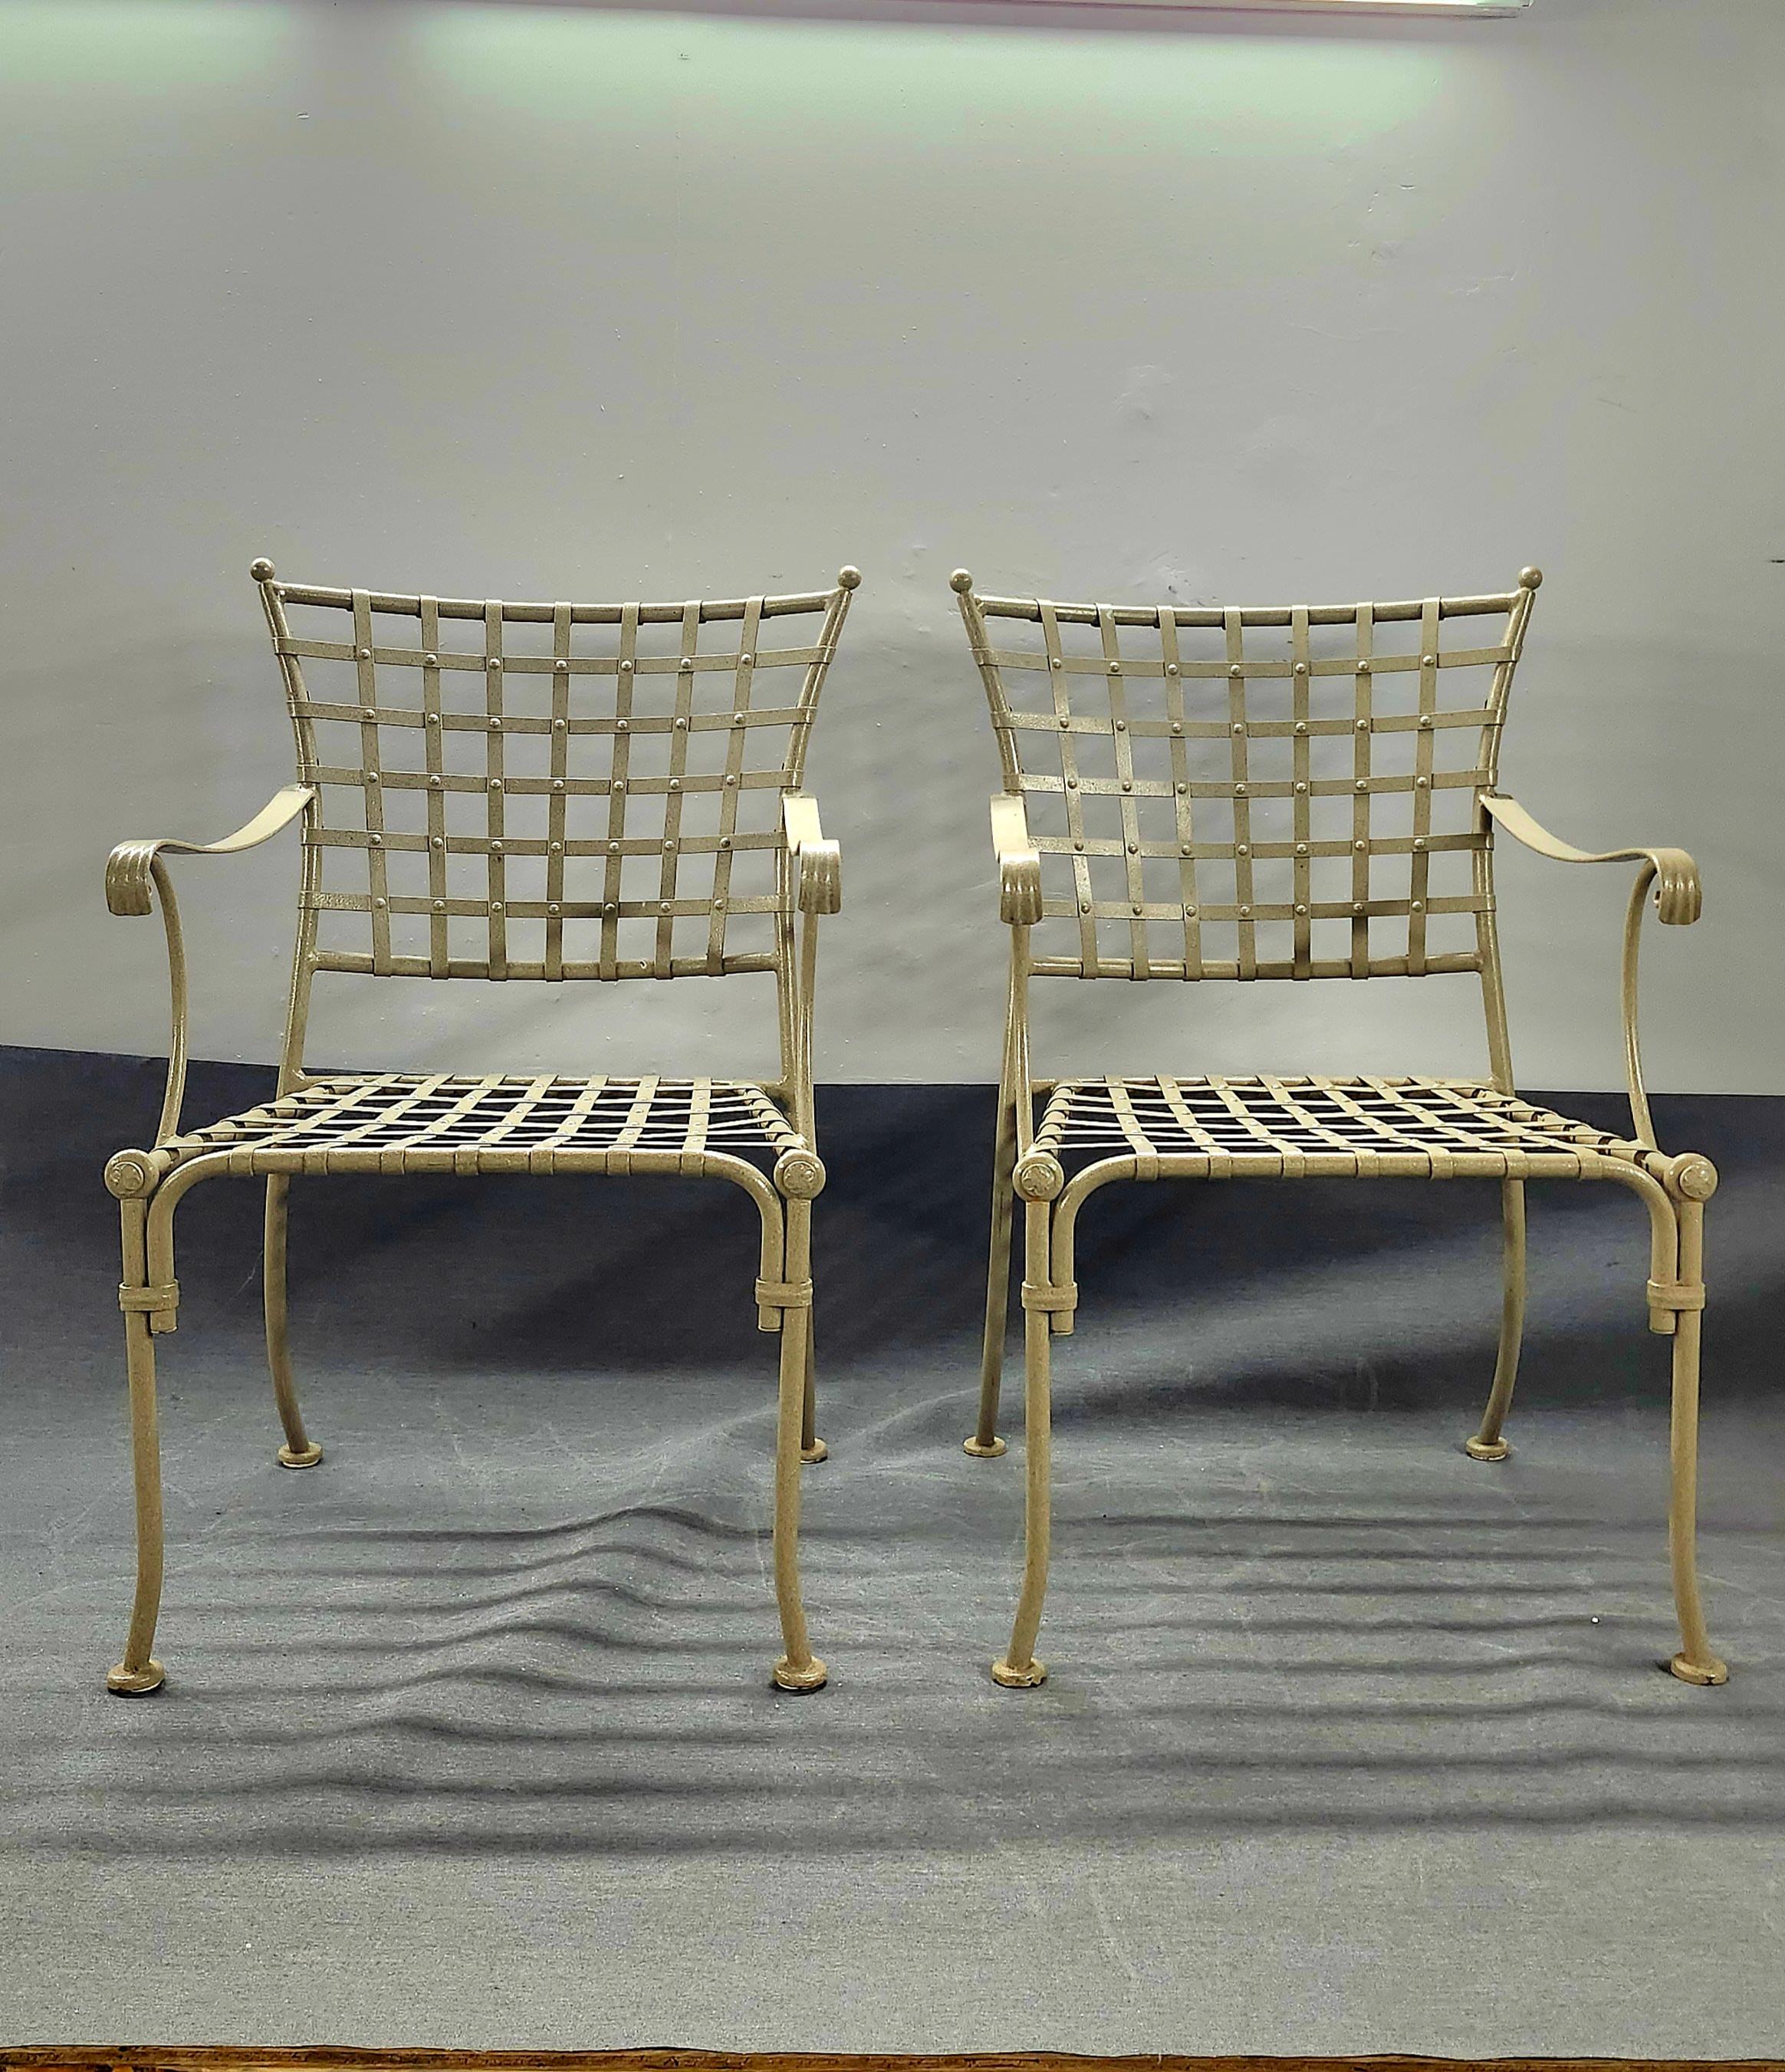 Disponible maintenant pour votre plaisir et prêt à être expédié est un Vintage Wrought Iron Patio Lounge Chairs attribué à Mario Papperzini.

Cette paire de chaises à accoudoirs en fer forgé est l'accessoire idéal pour tout jardin, terrasse ou